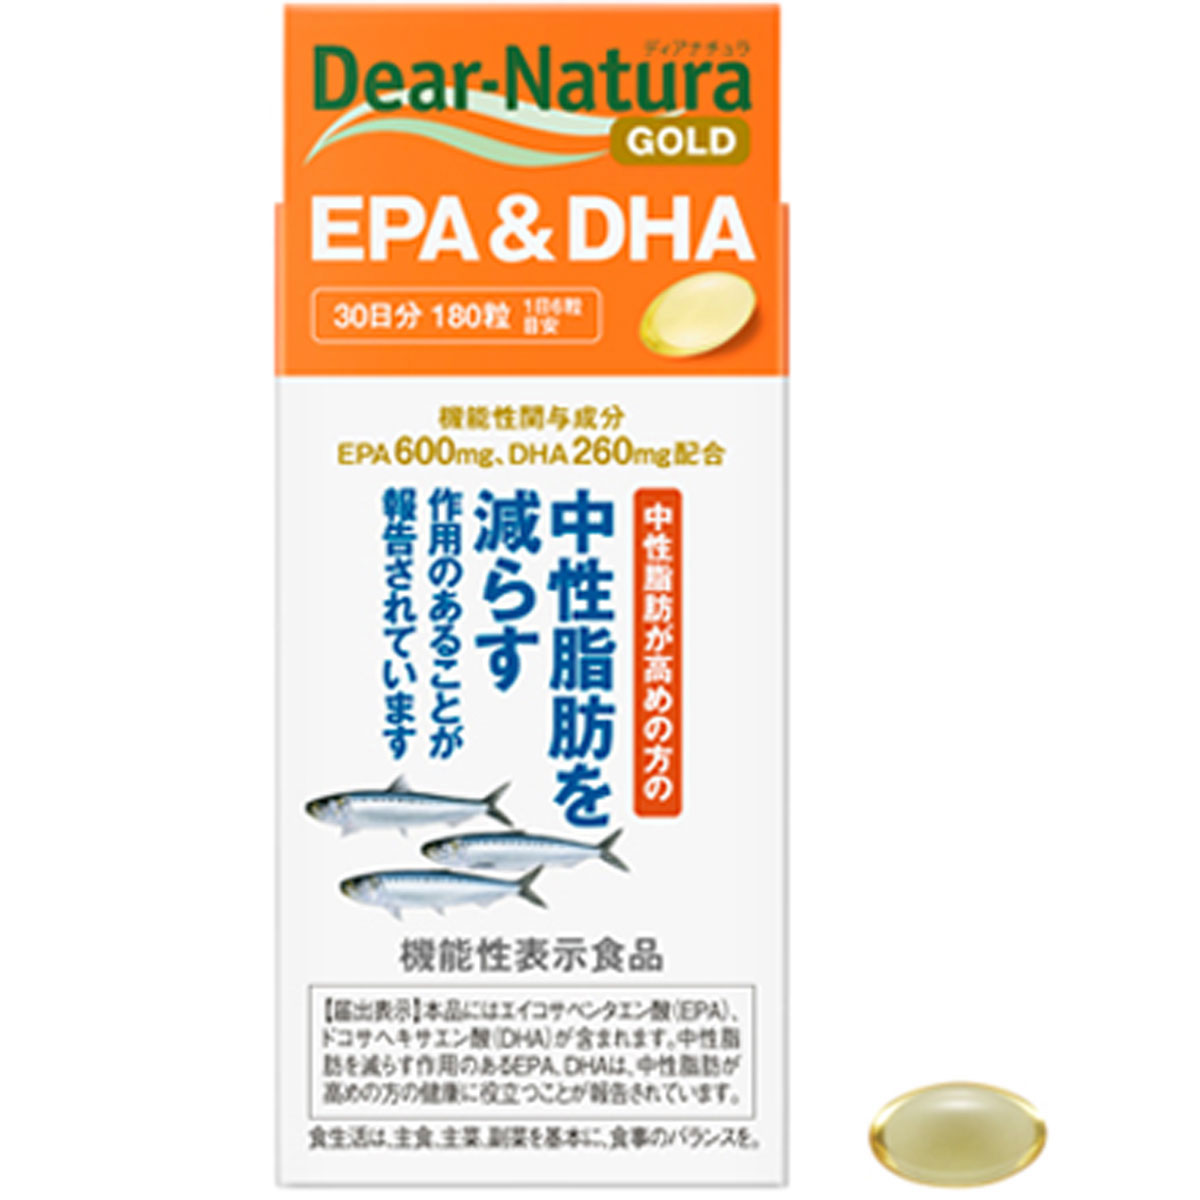 ディアナチュラゴールド EPA＆DHA 30日分 180粒 アサヒグループ食品 中性脂肪が高めの方に!健康 香料 着色料 保存料 無添加 エイコサペンタエン酸(EPA) ドコサヘキサエン酸(DHA) サプリメント 必須脂肪酸 ヘルスケア